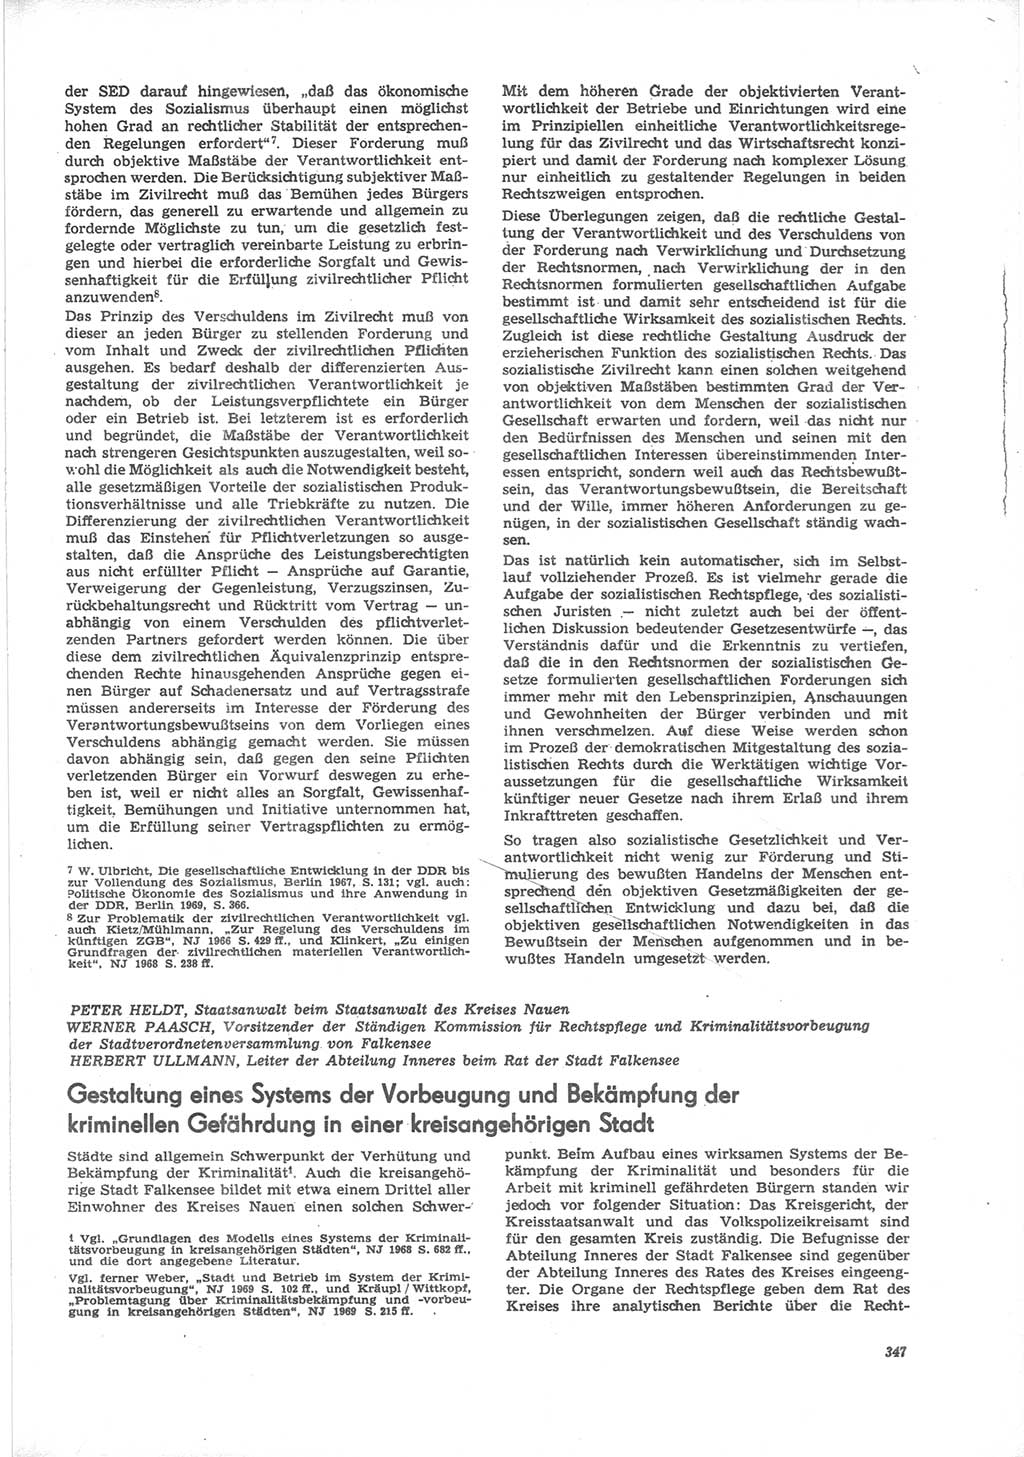 Neue Justiz (NJ), Zeitschrift für Recht und Rechtswissenschaft [Deutsche Demokratische Republik (DDR)], 24. Jahrgang 1970, Seite 347 (NJ DDR 1970, S. 347)